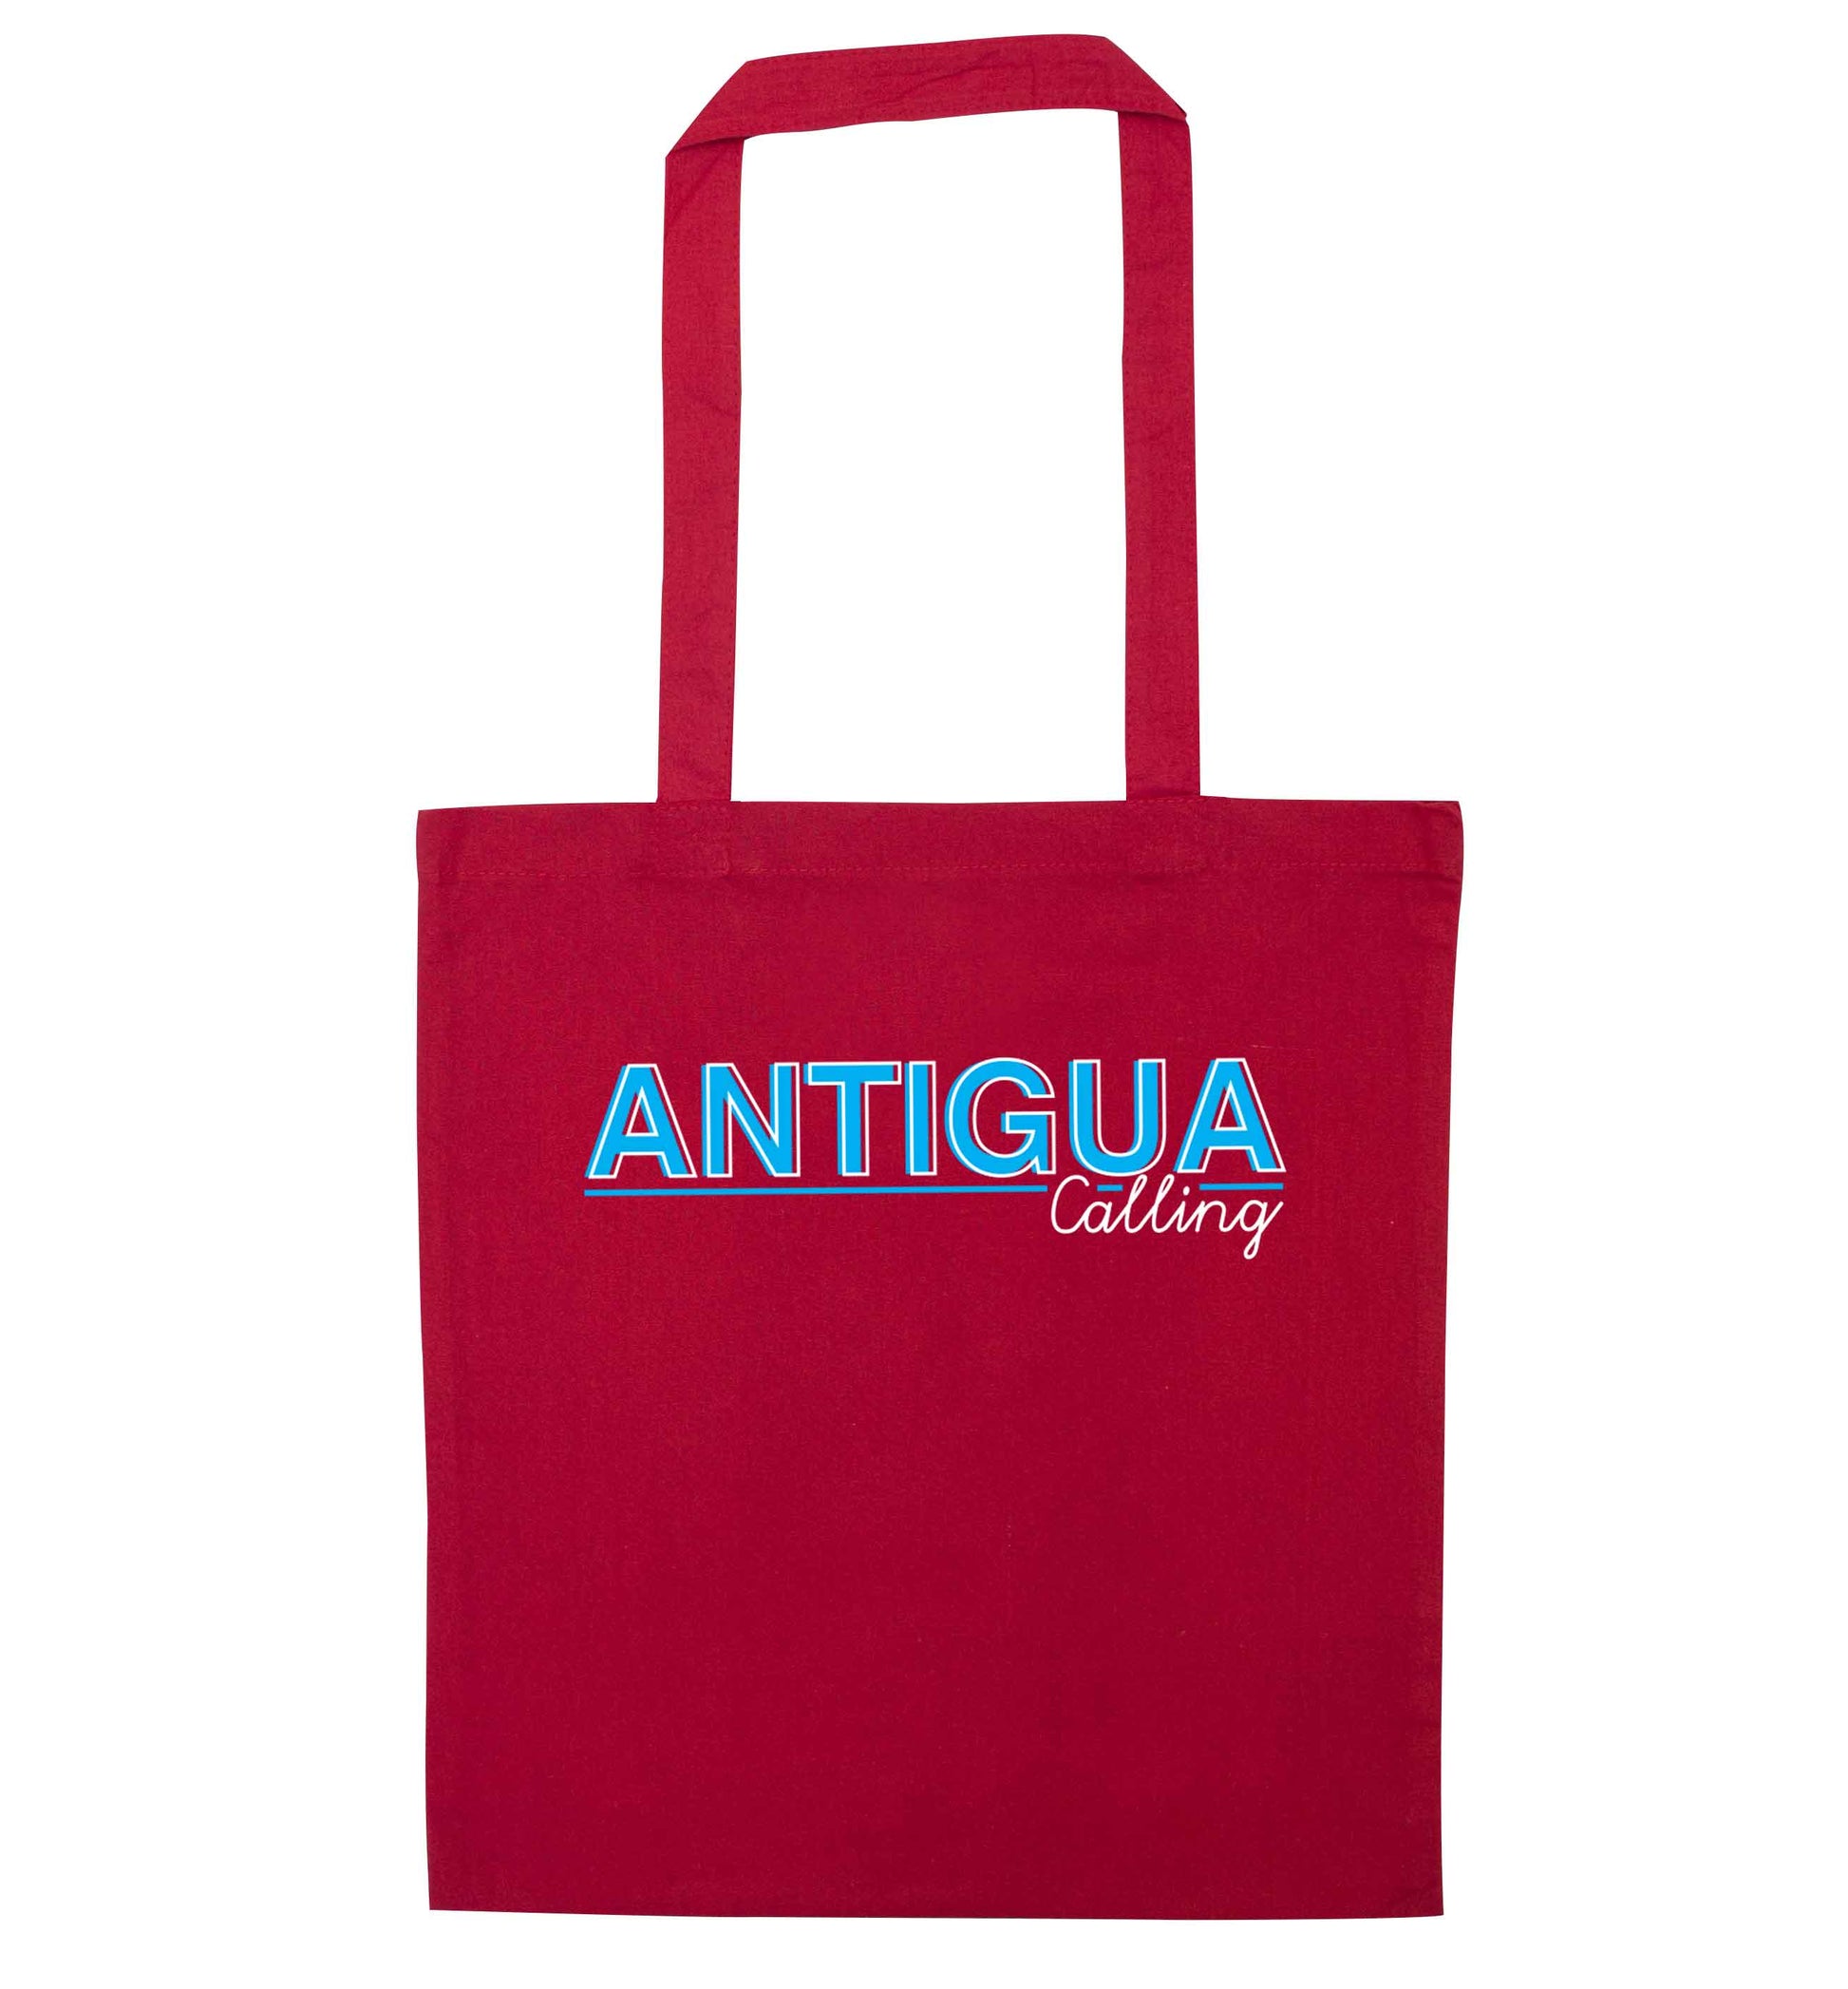 Antigua calling red tote bag